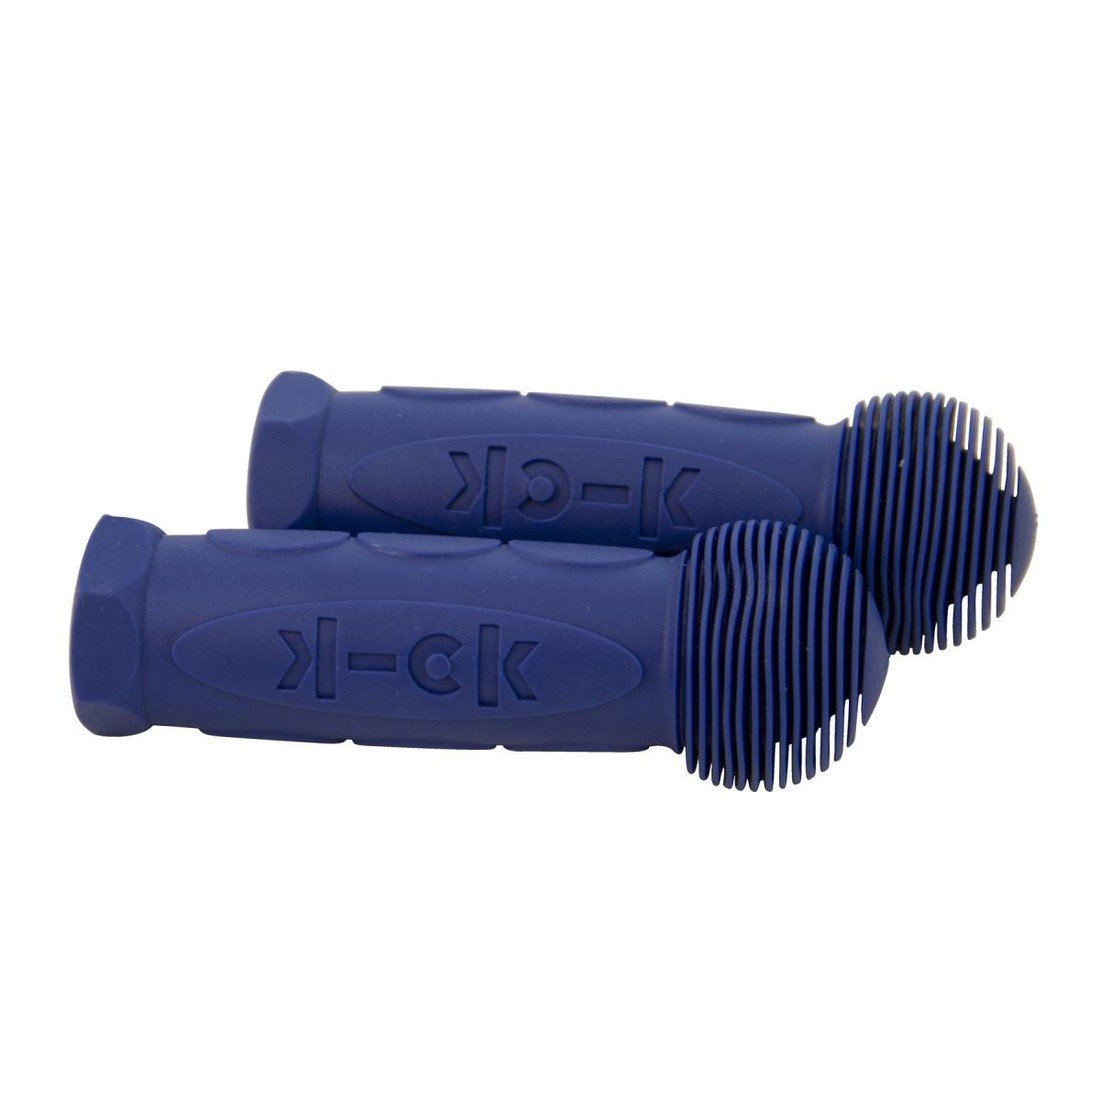 Micro - Grip 1356 Blue - grip